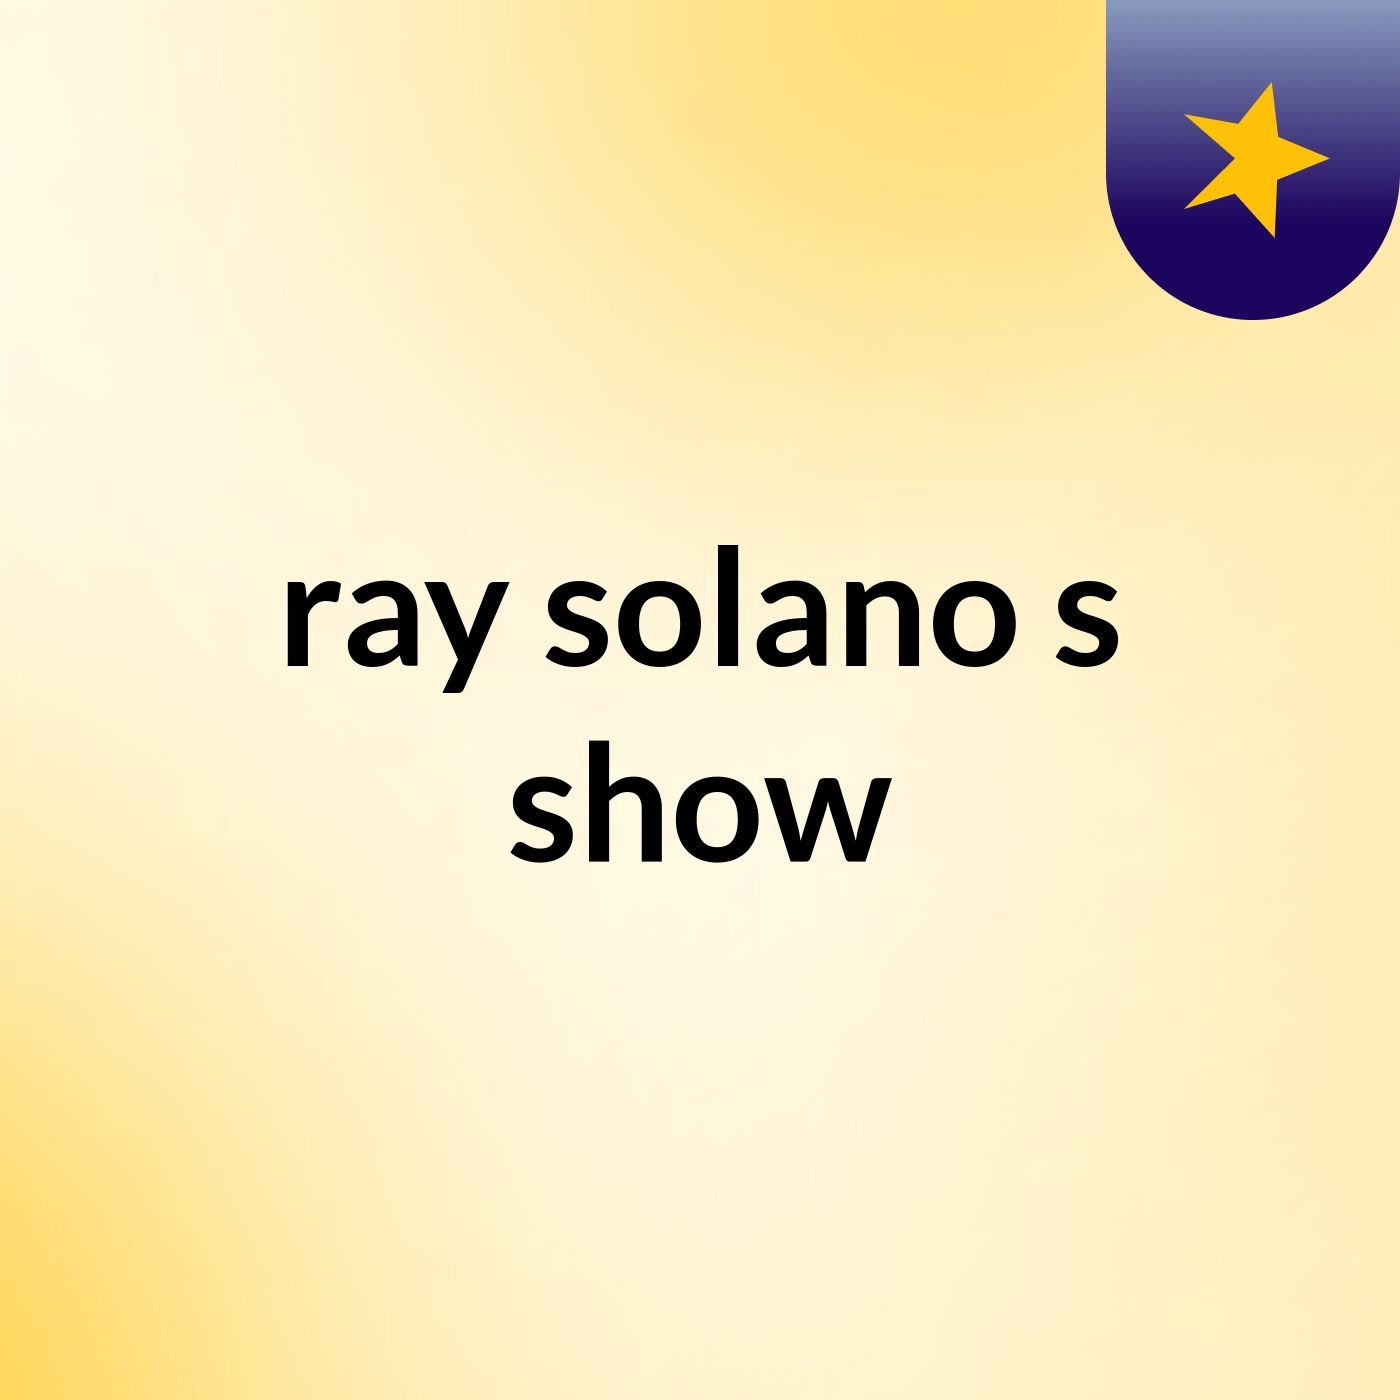 ray solano's show